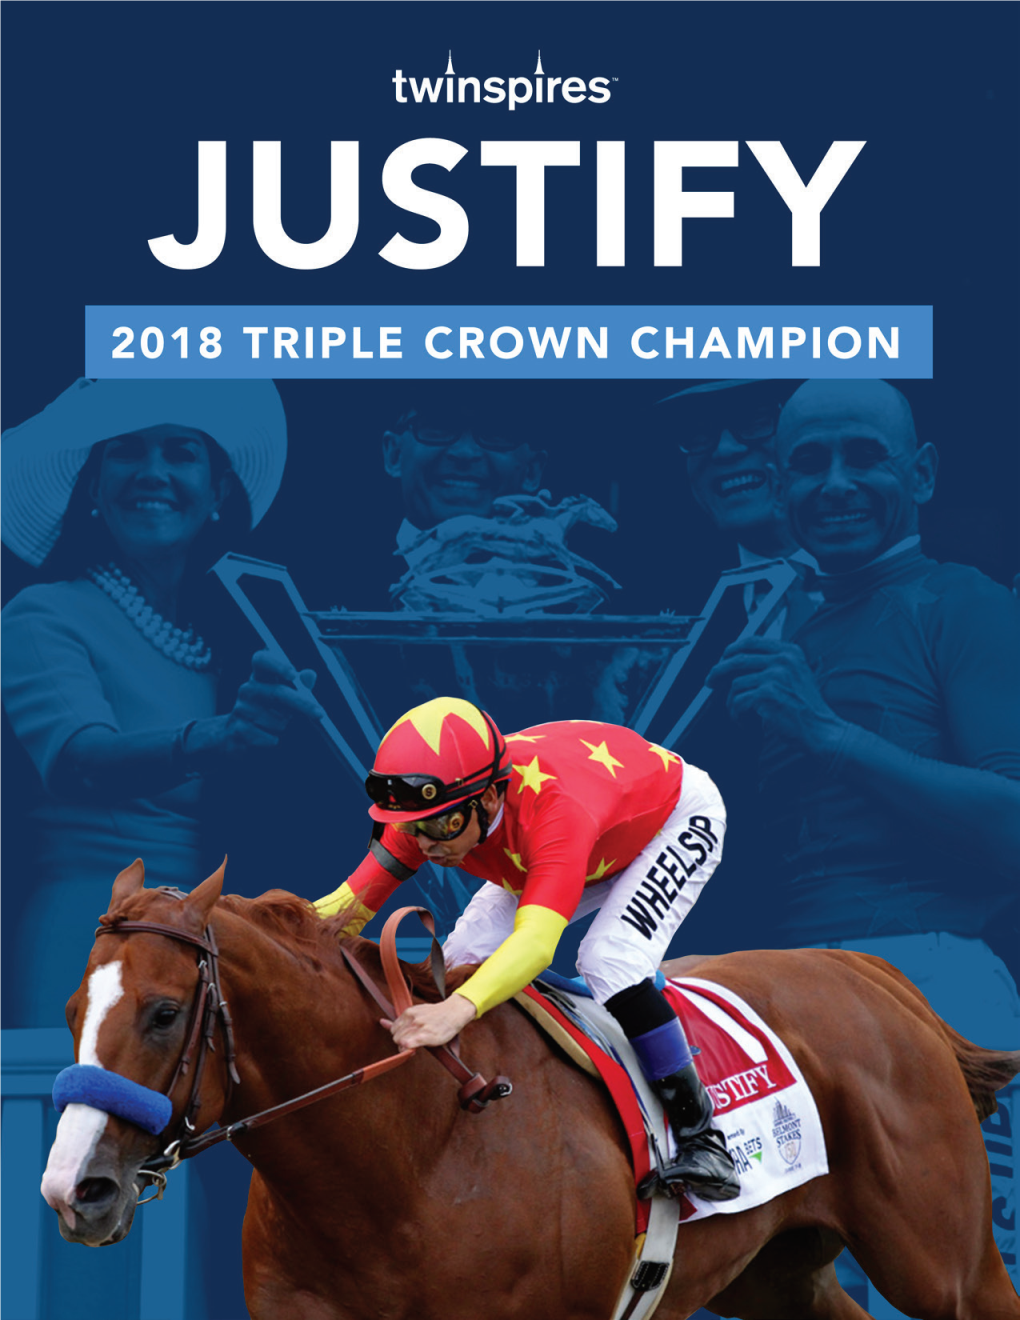 Triple Crown Winner Justify Career in Review